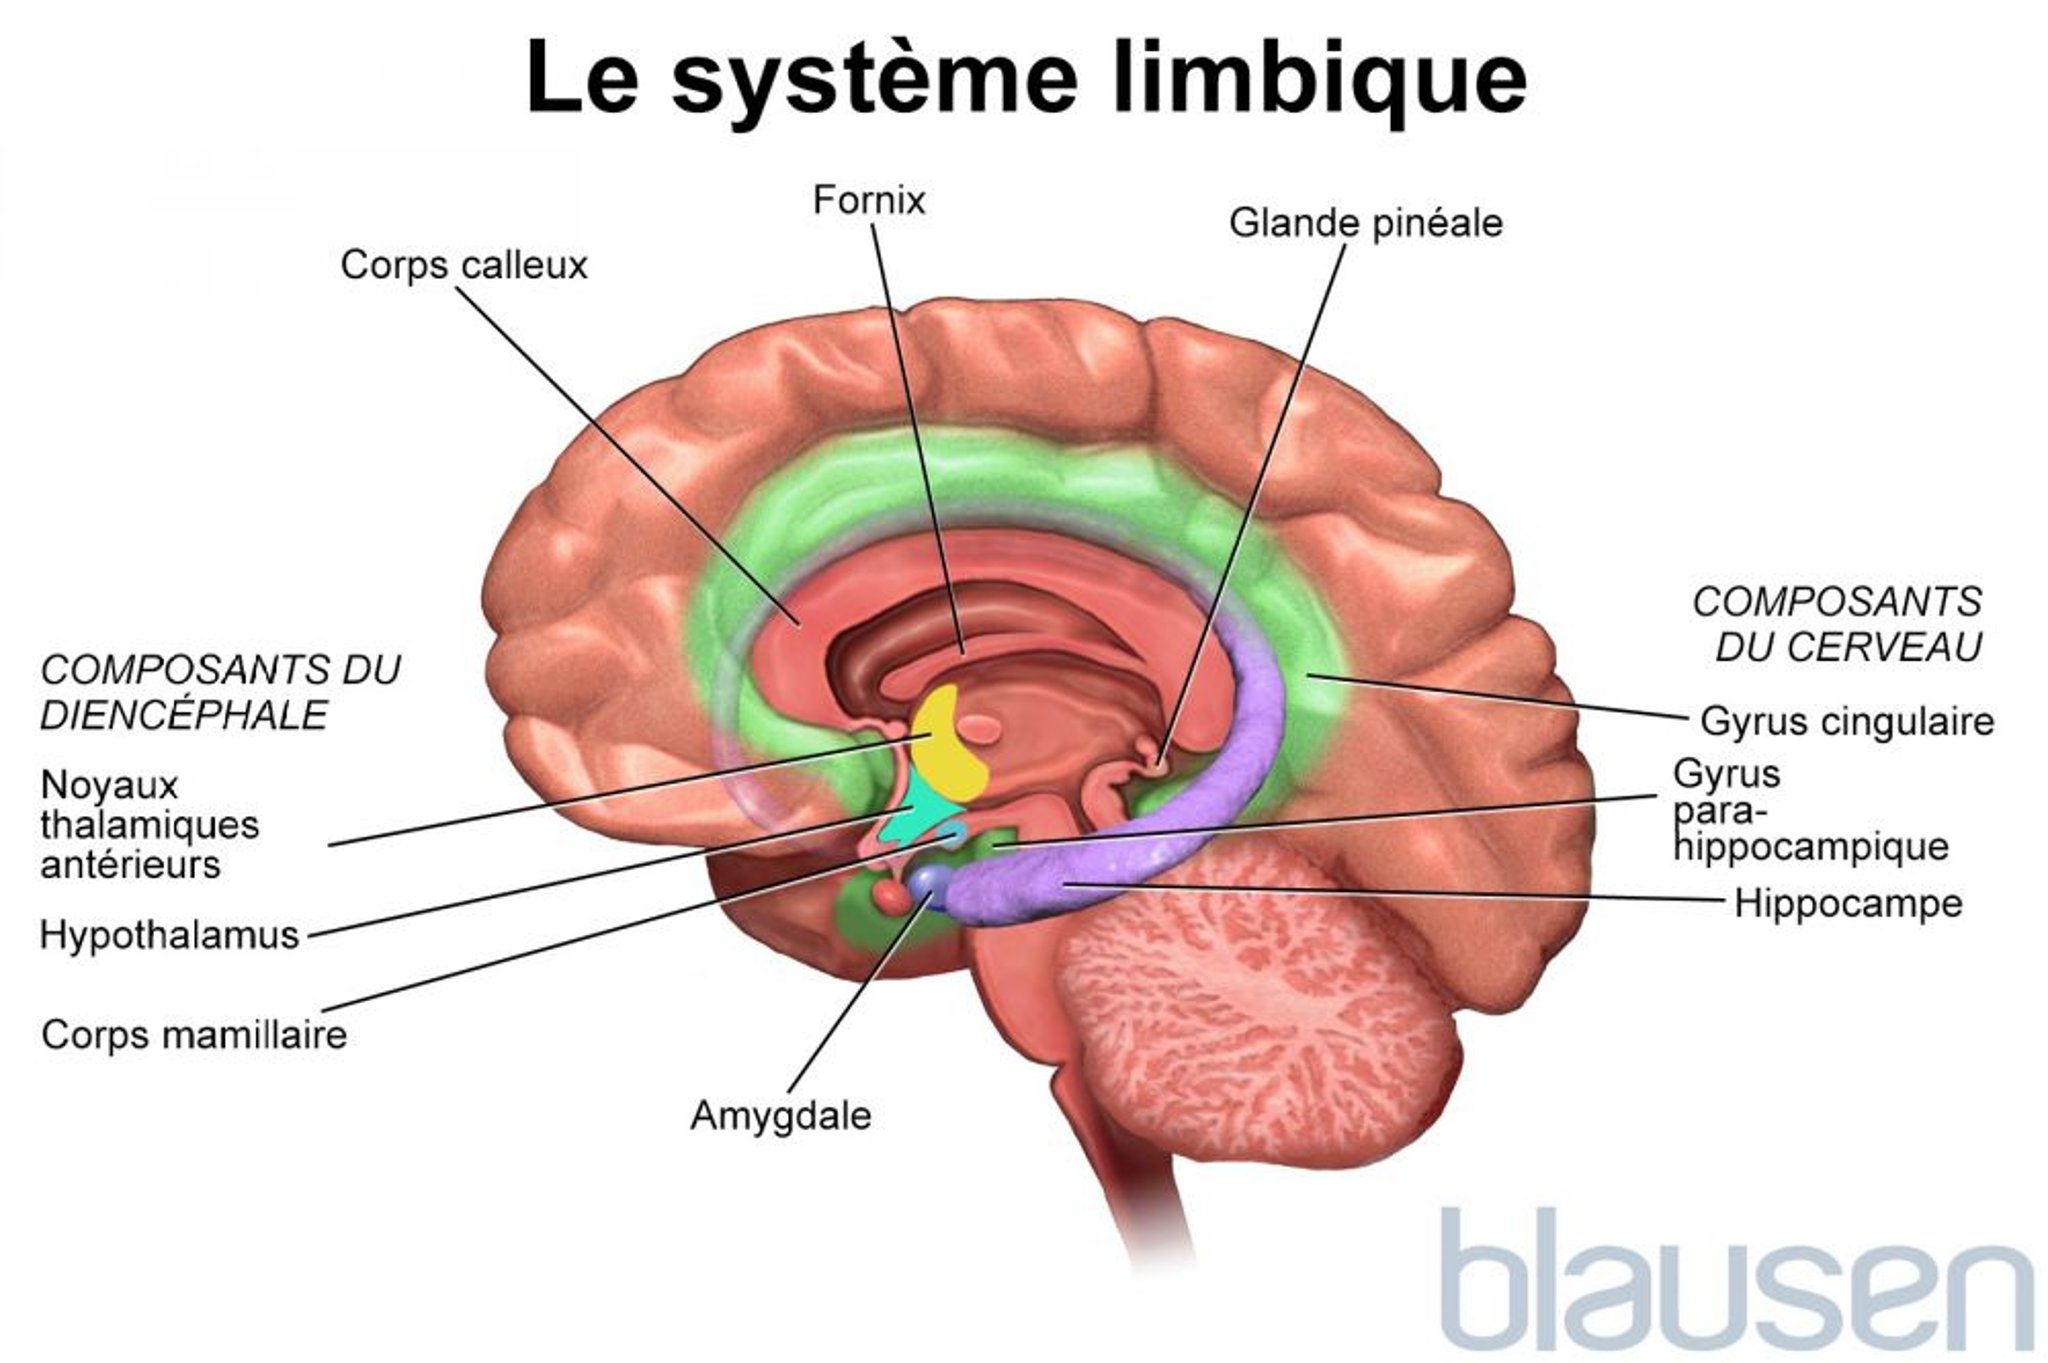 Le système limbique